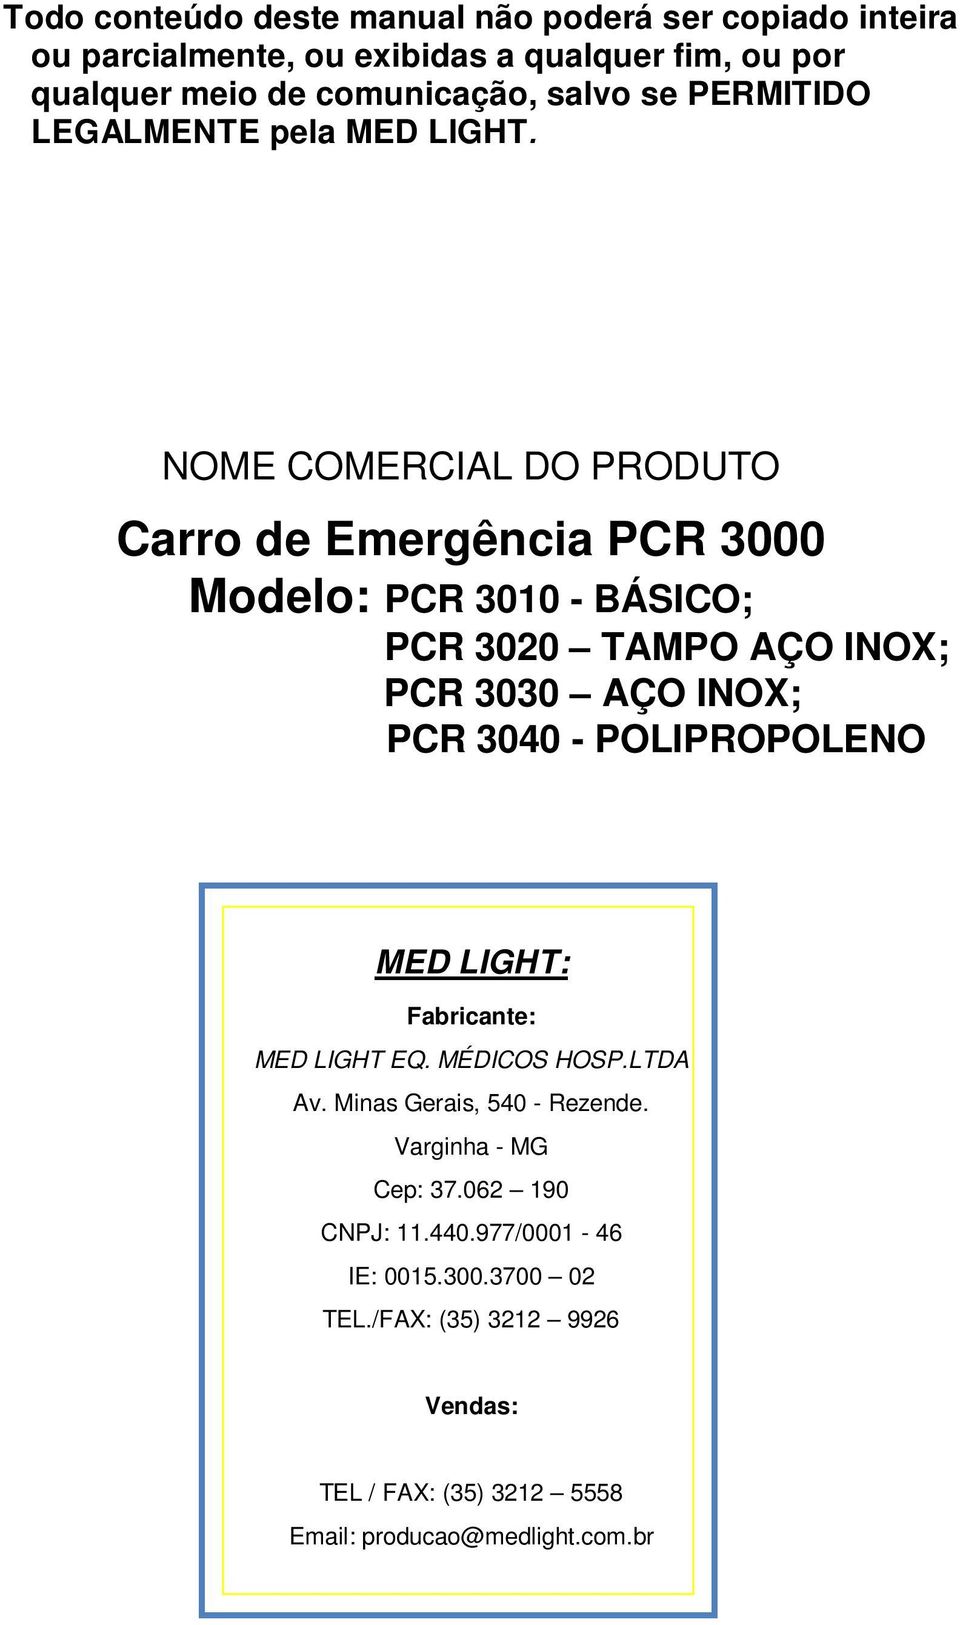 NOME COMERCIAL DO PRODUTO Carro de Emergência PCR 3000 Modelo: PCR 3010 - BÁSICO; PCR 3020 TAMPO AÇO INOX; PCR 3030 AÇO INOX; PCR 3040 -